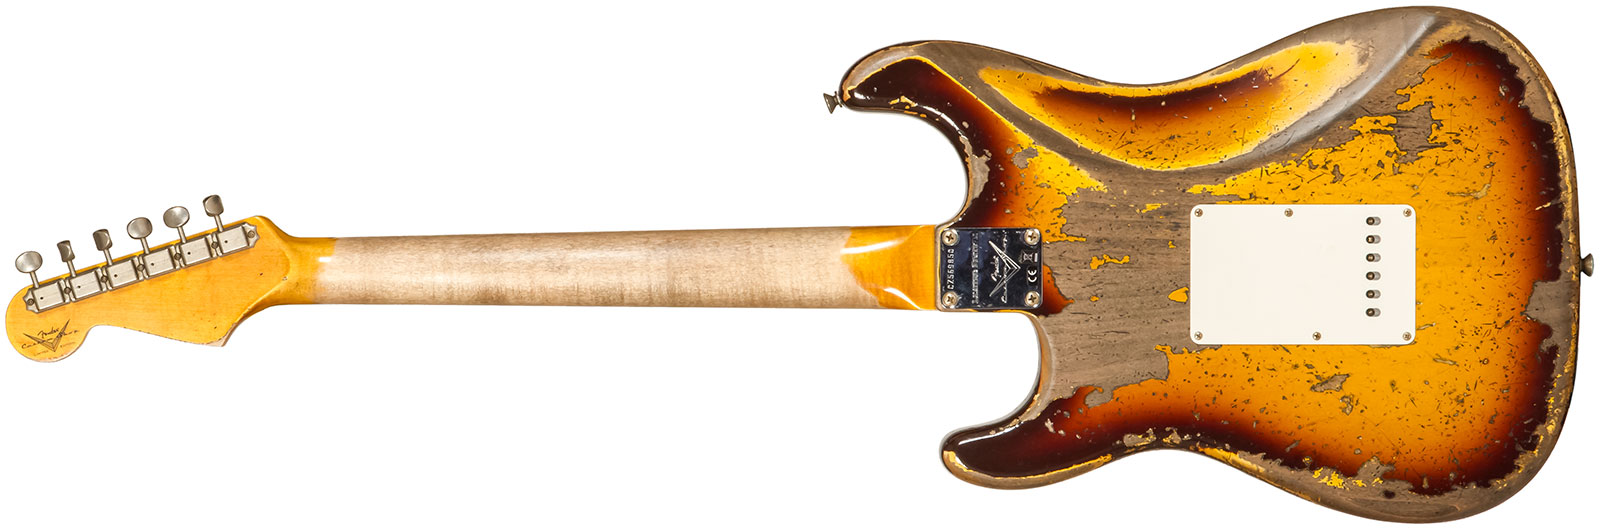 Fender Custom Shop Strat 1959 3s Trem Rw #cz569850 - Super Heavy Relic Aged Chocolate 3-color Sunburst - Guitare Électrique Forme Str - Variation 1